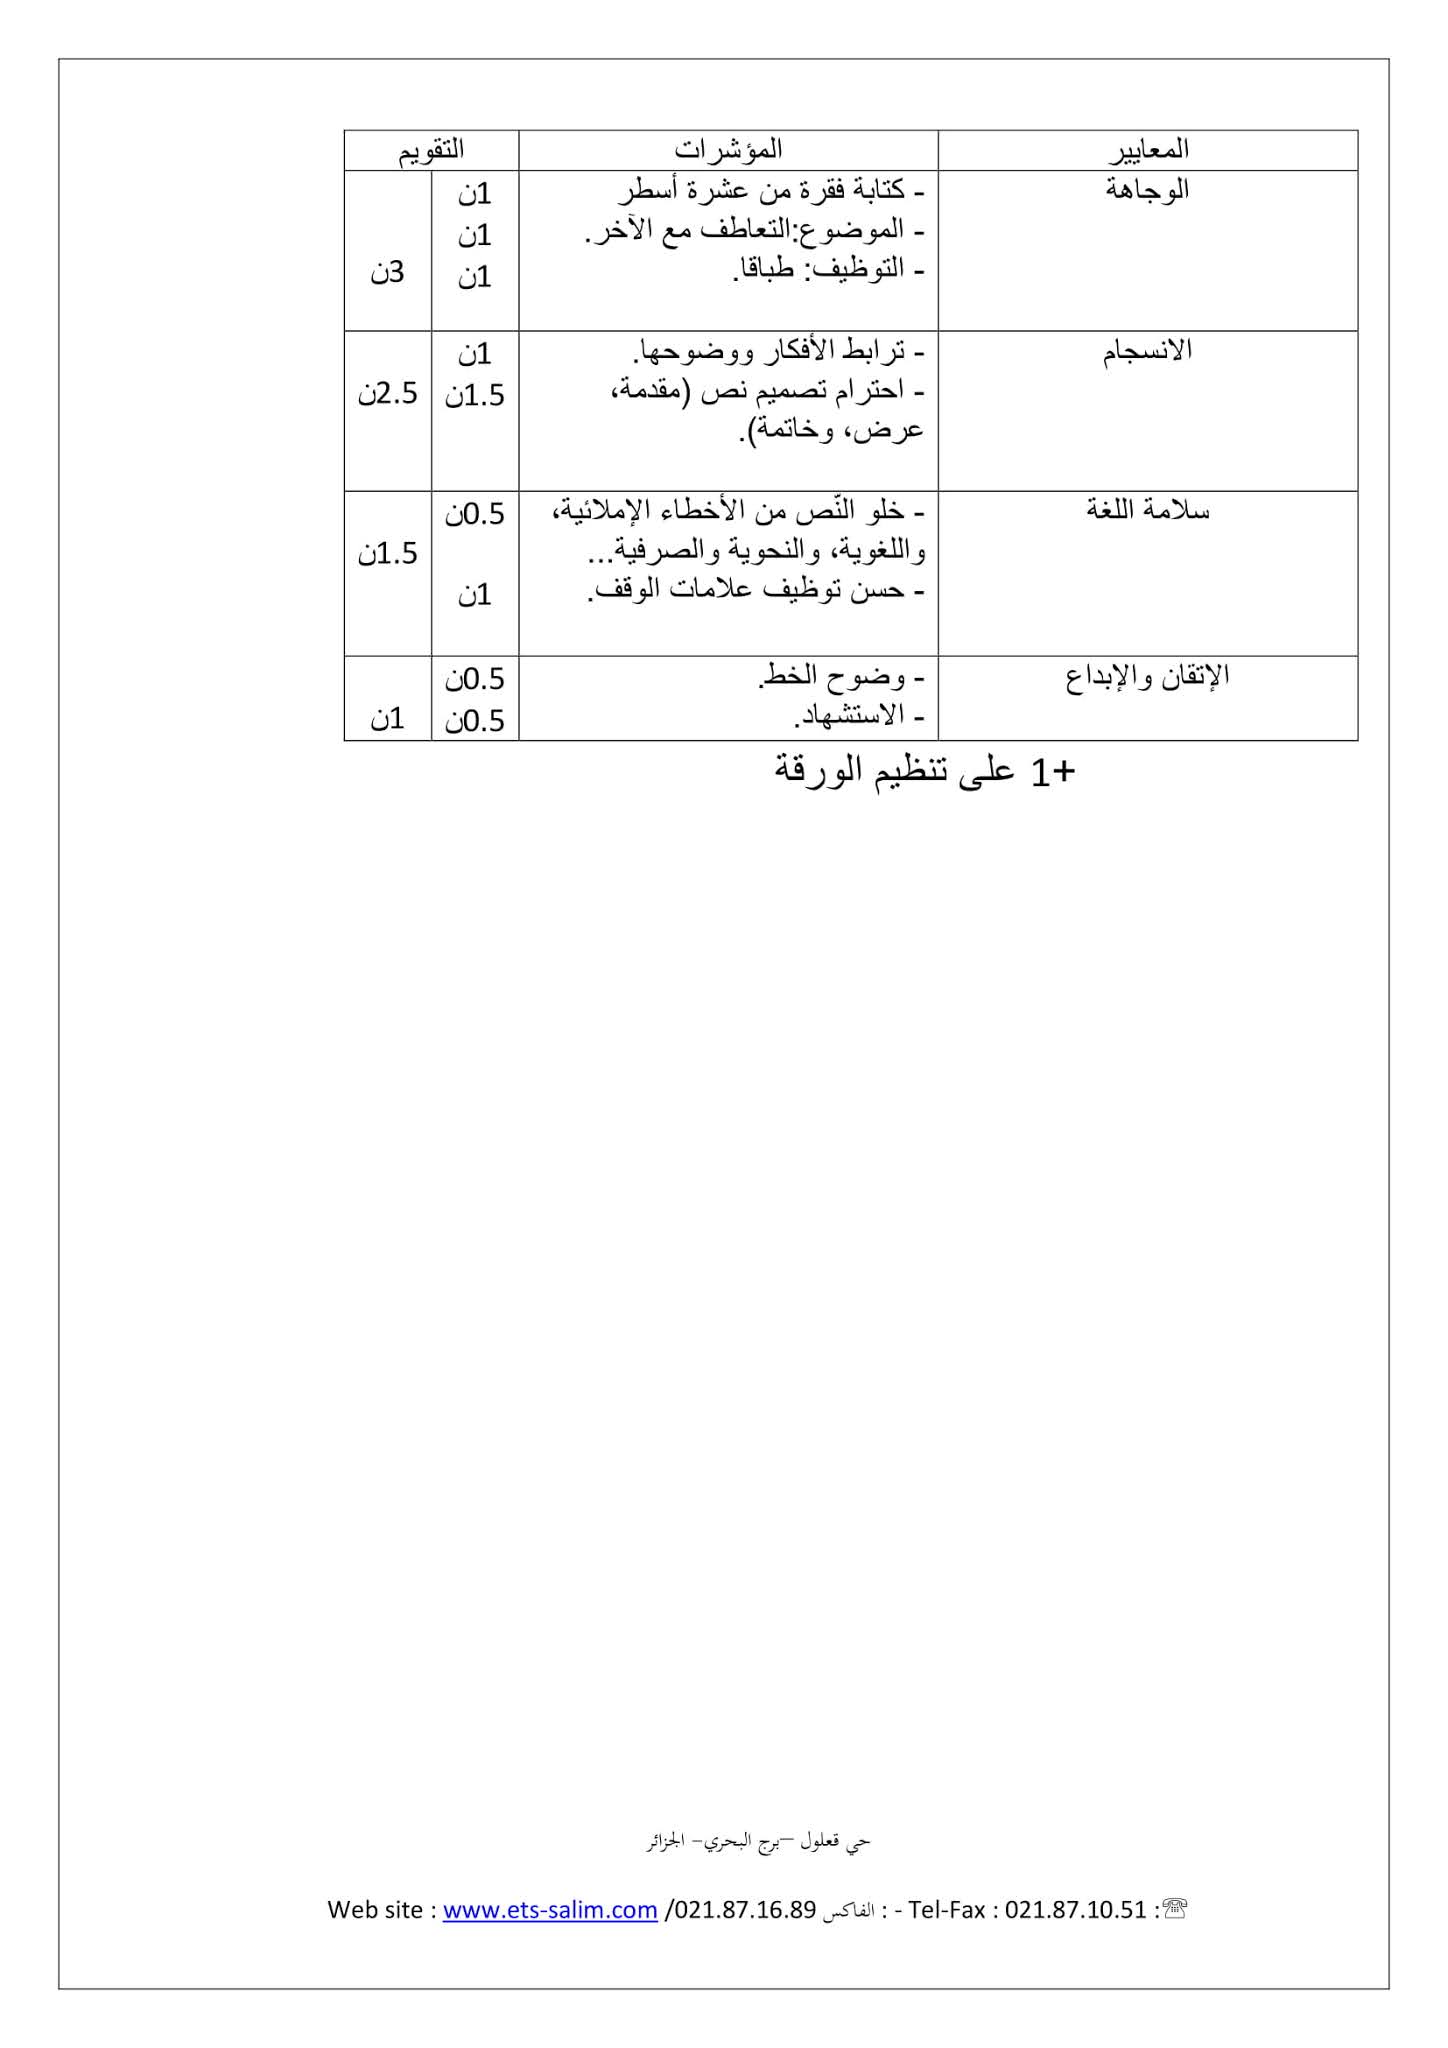 فرض اللغة العربية الفصل الثاني للسنة الأولى متوسط - الجيل الثاني نموذج 2